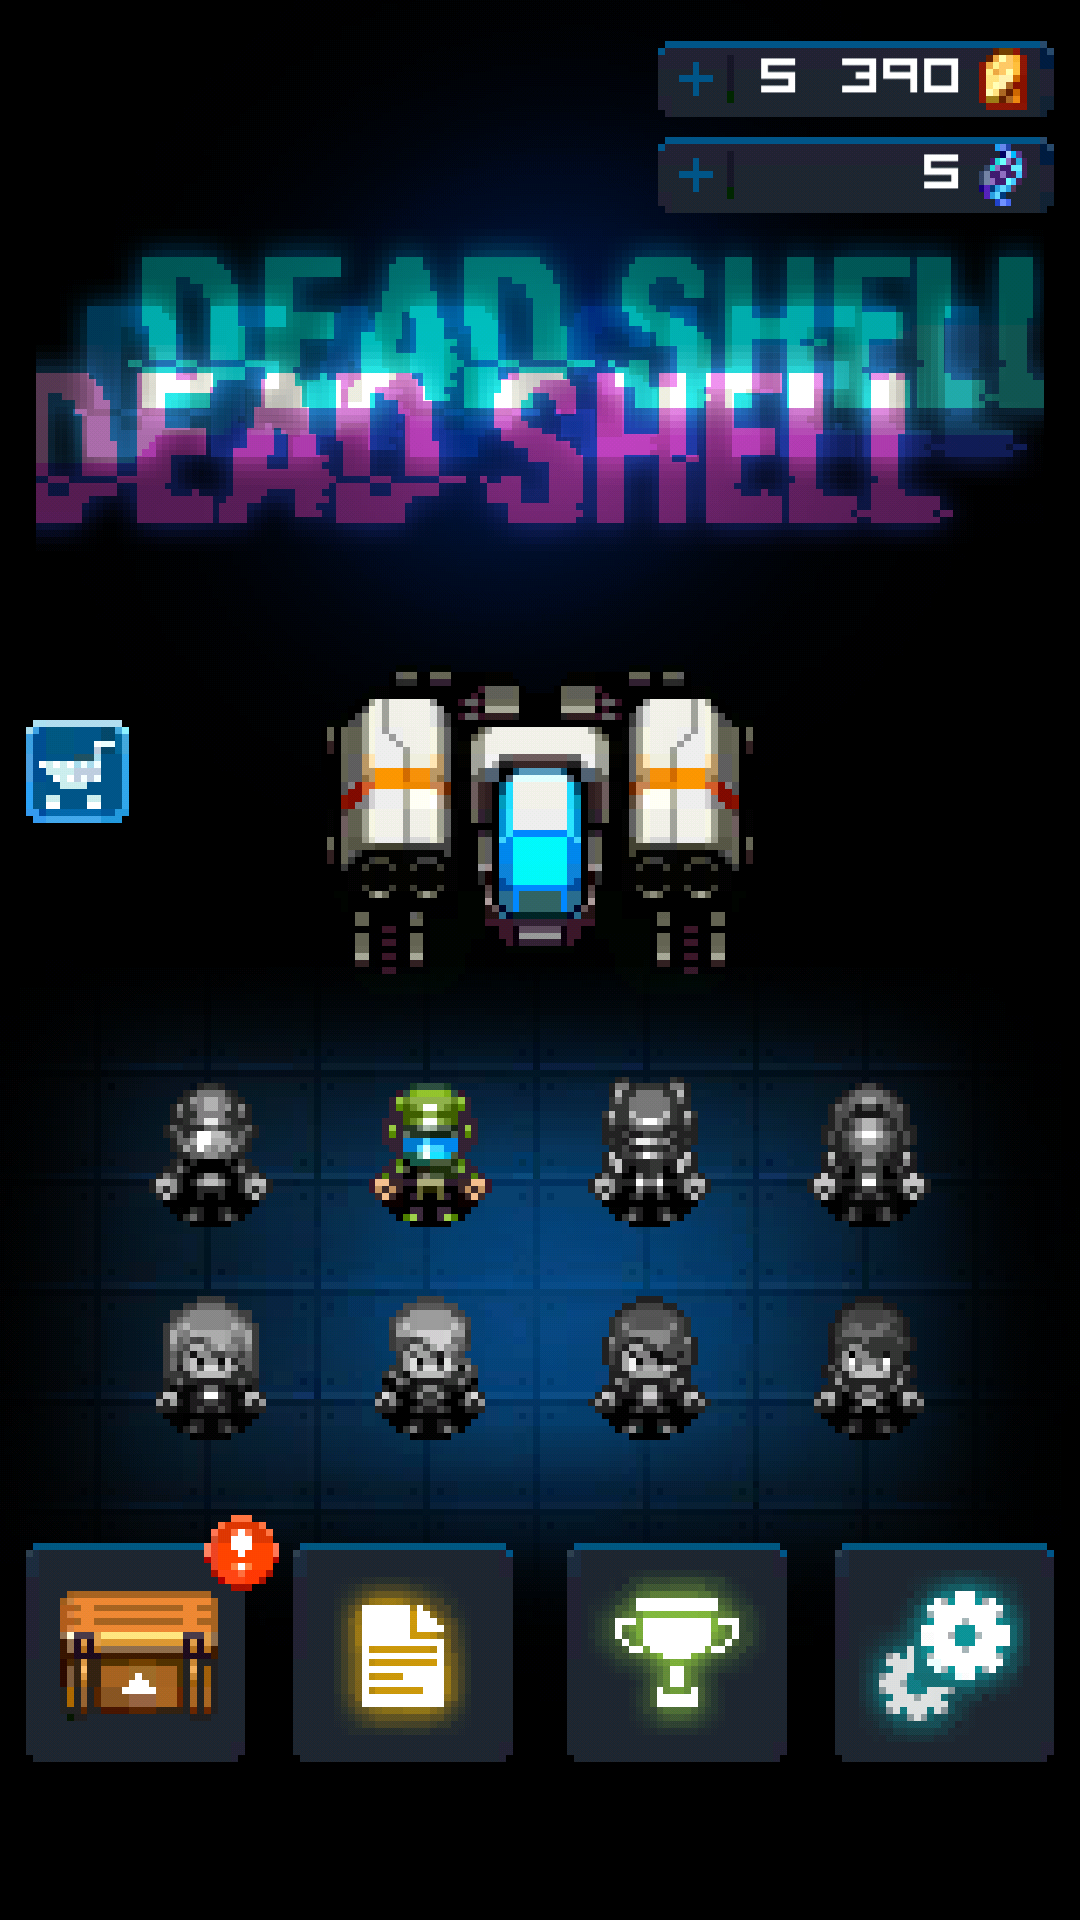 Dead Shell－Pixel Roguelike RPG